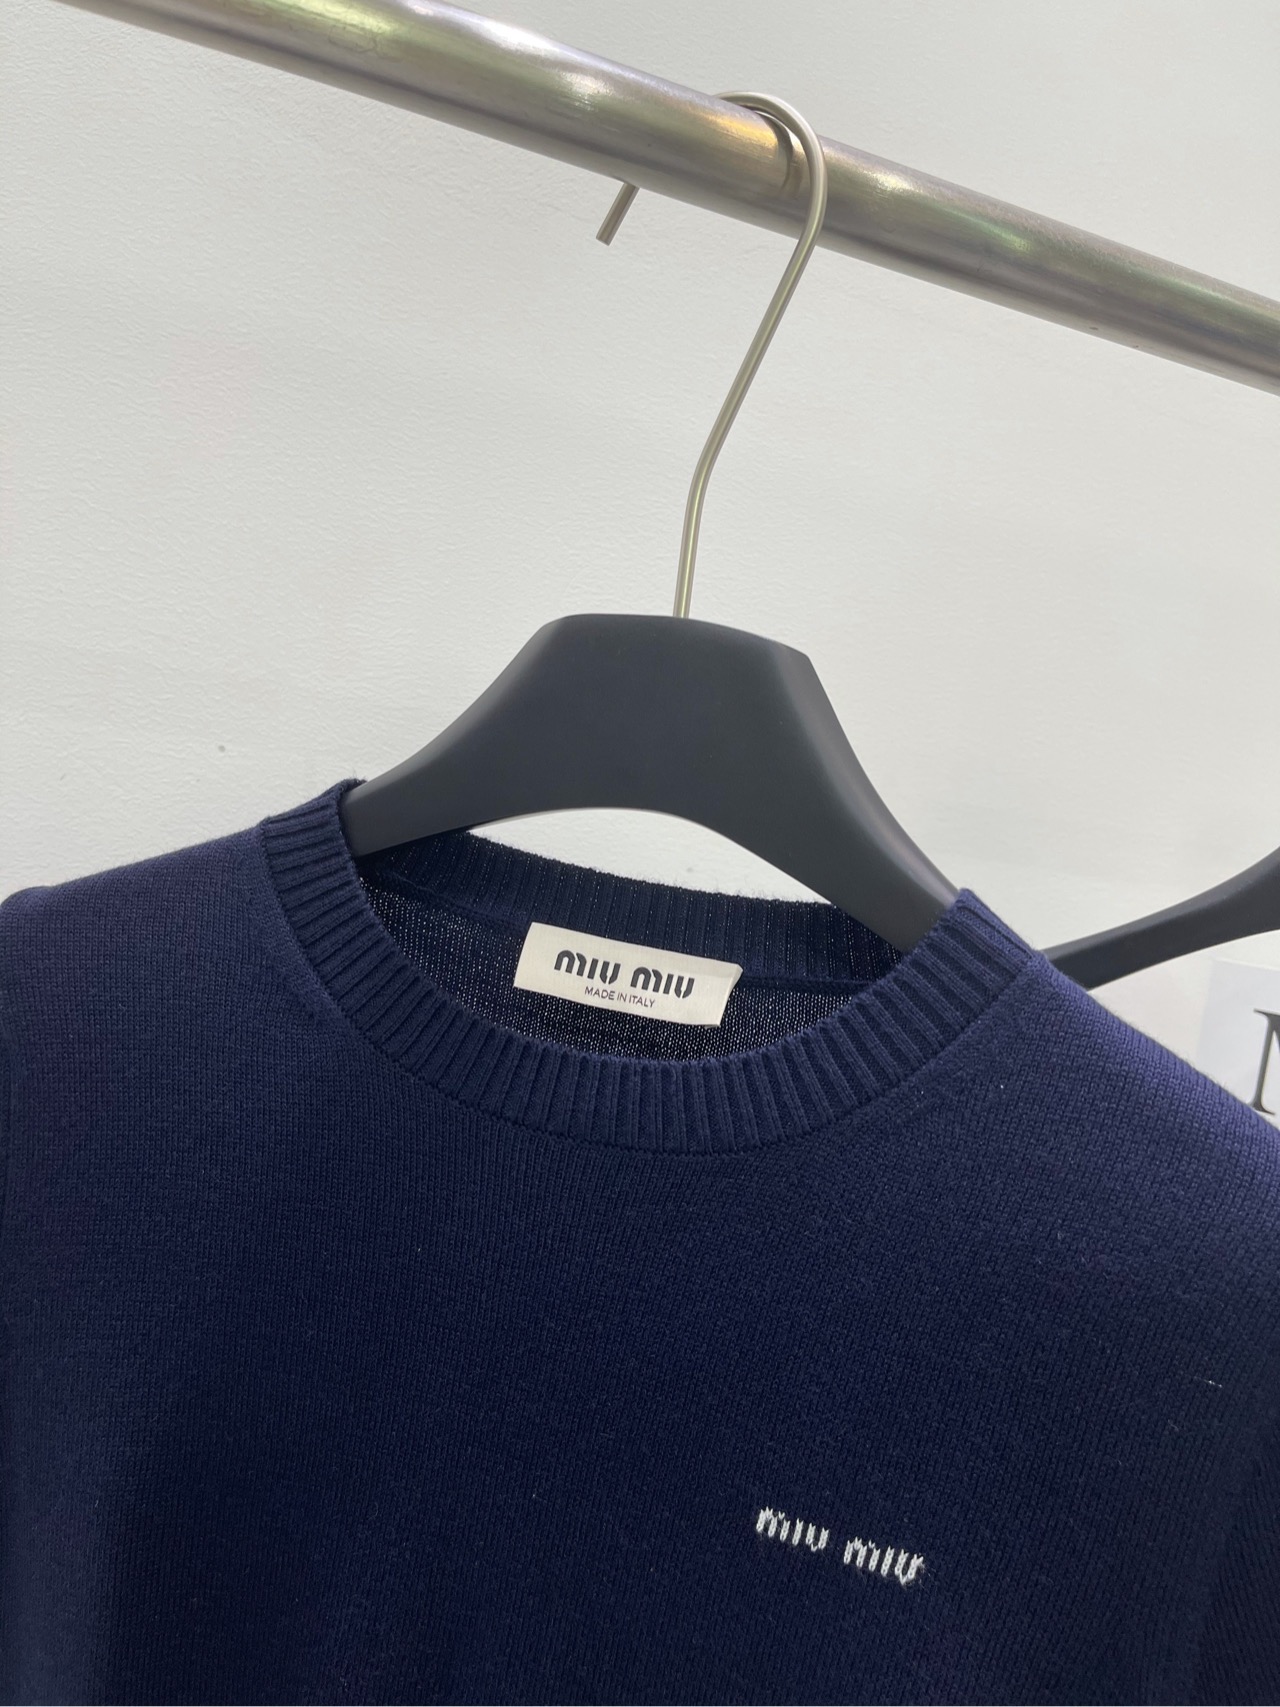 爆買い品質保証 ミュウミュウ ツイリー激安通販 Tシャツ トップス 短袖 純綿 シンプル ブルー_2